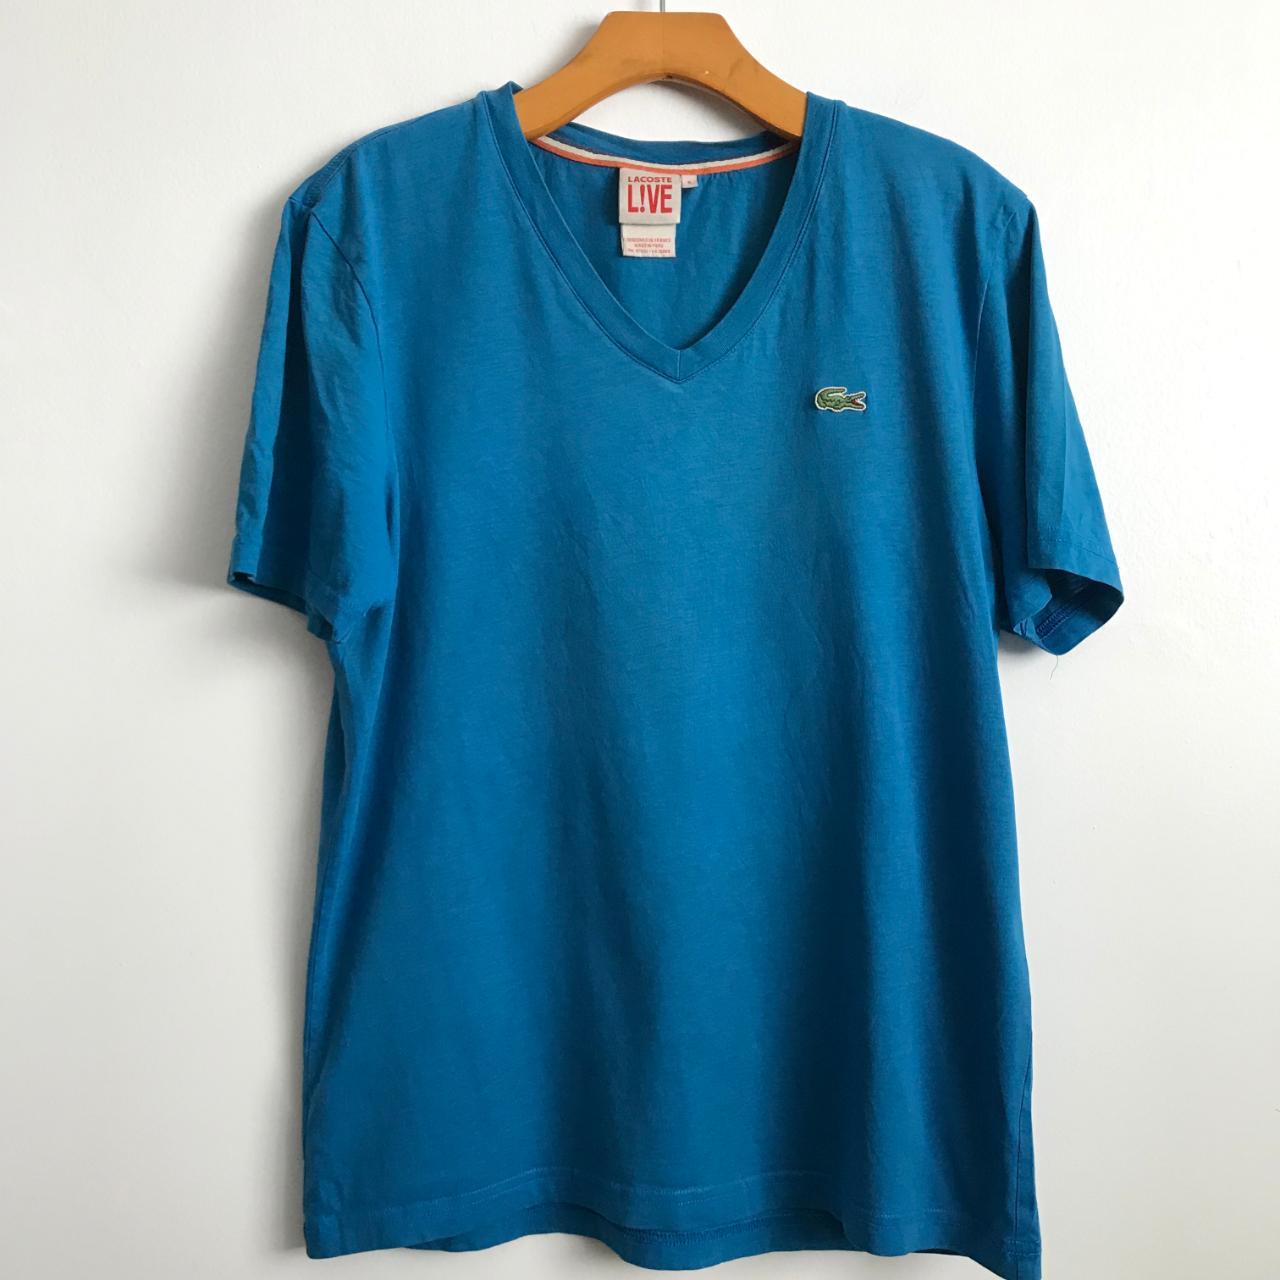 Lacoste Live Men's Blue T-shirt